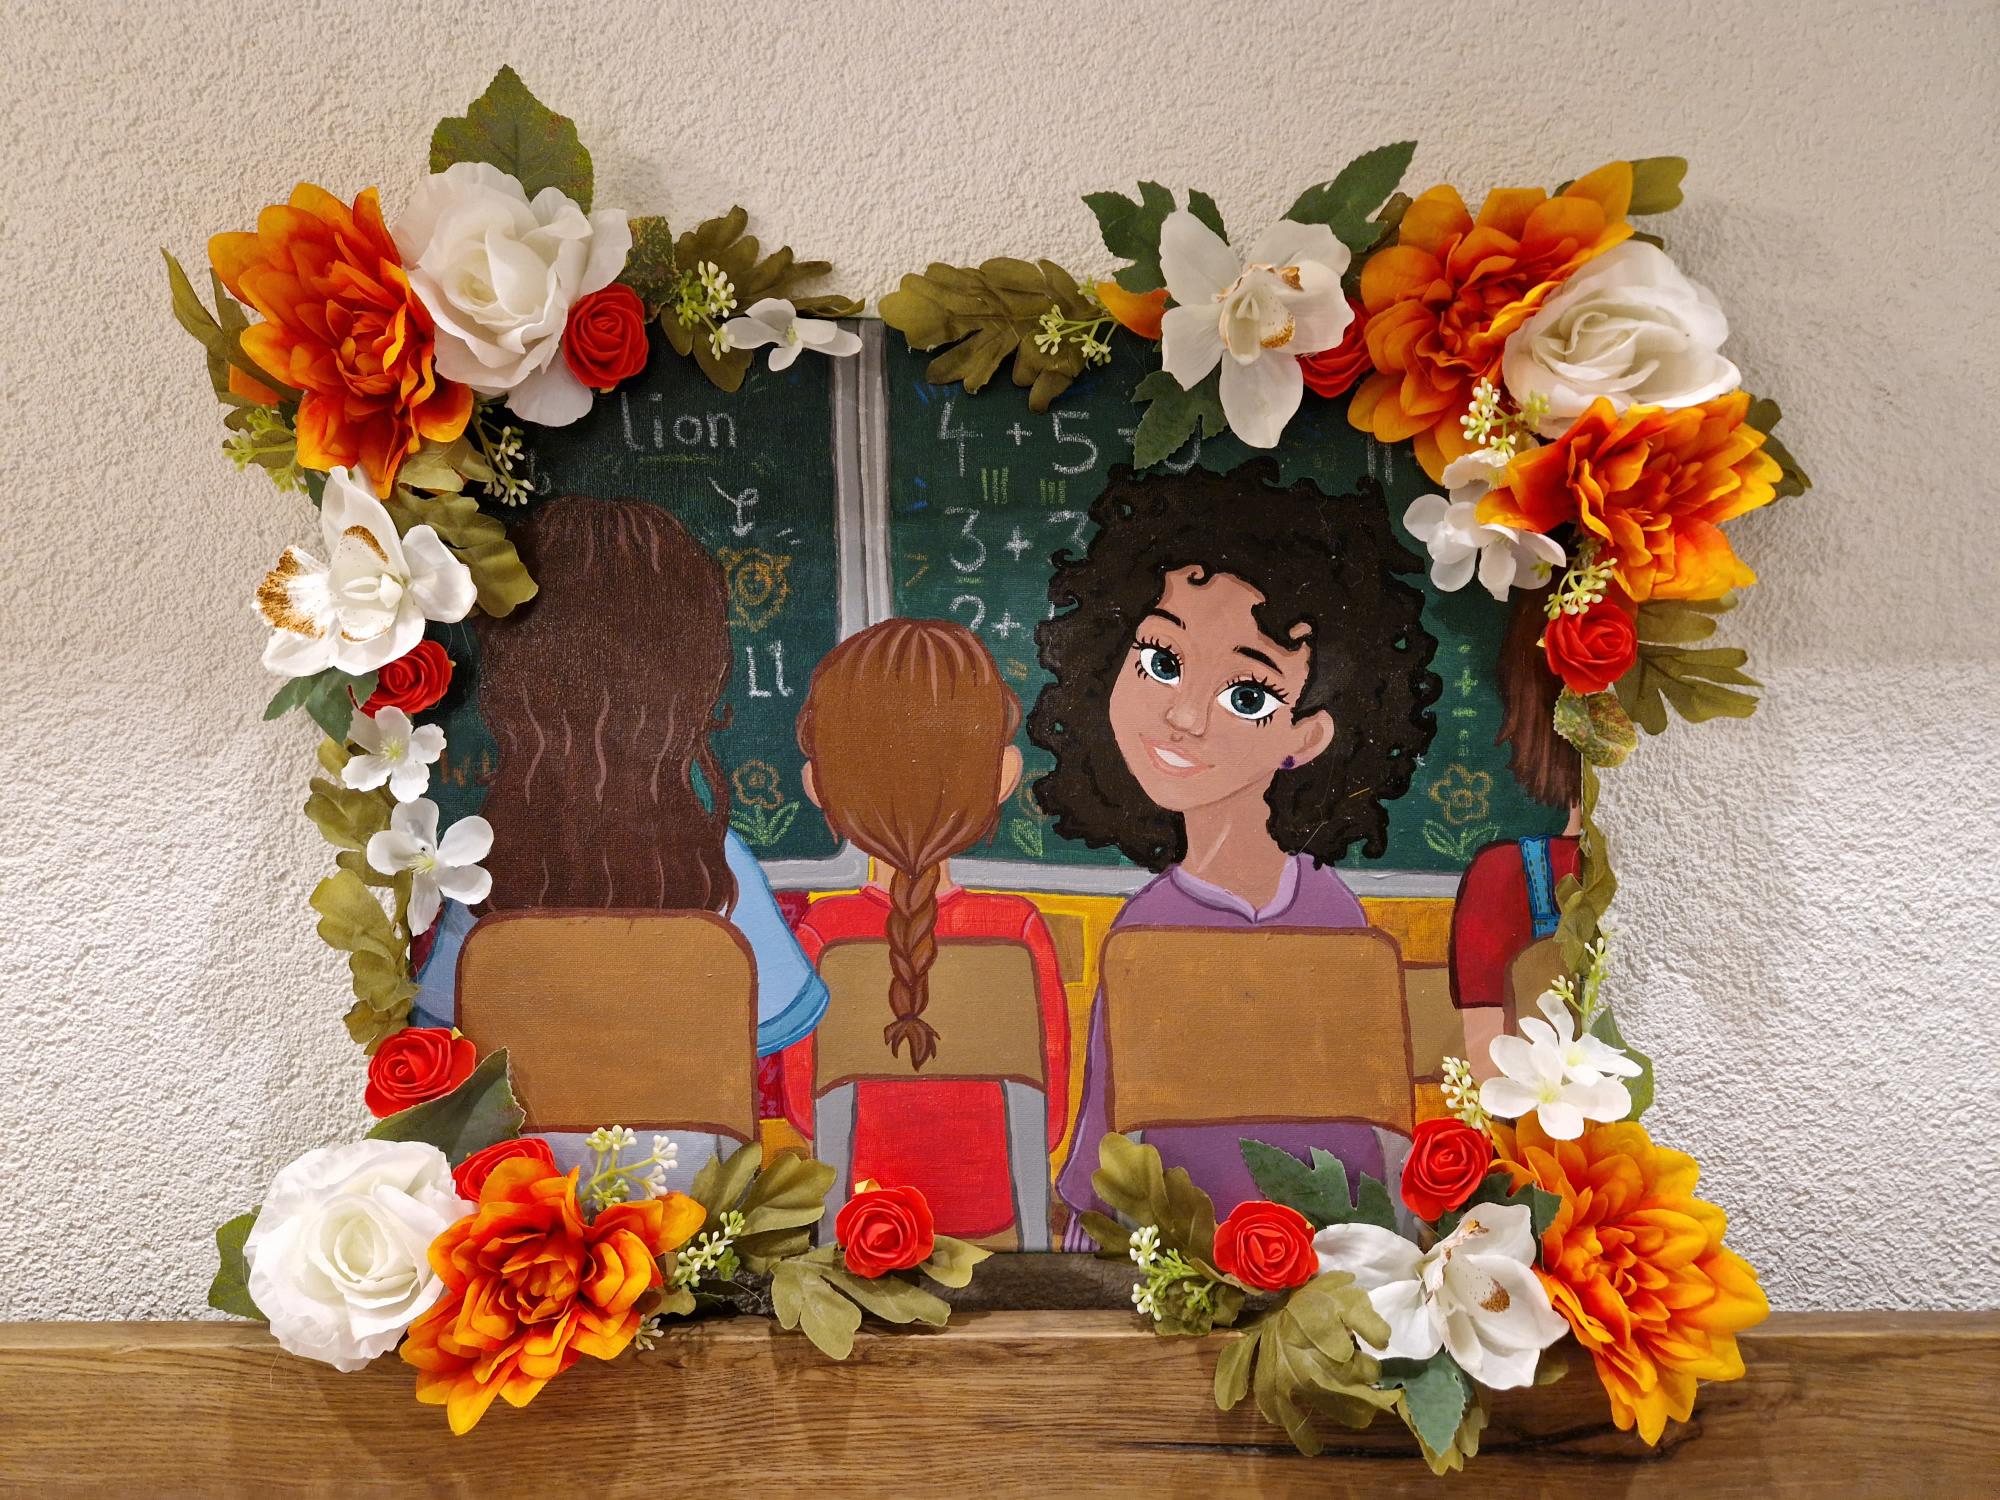 Gemälde von drei Mädchen mit Blumen